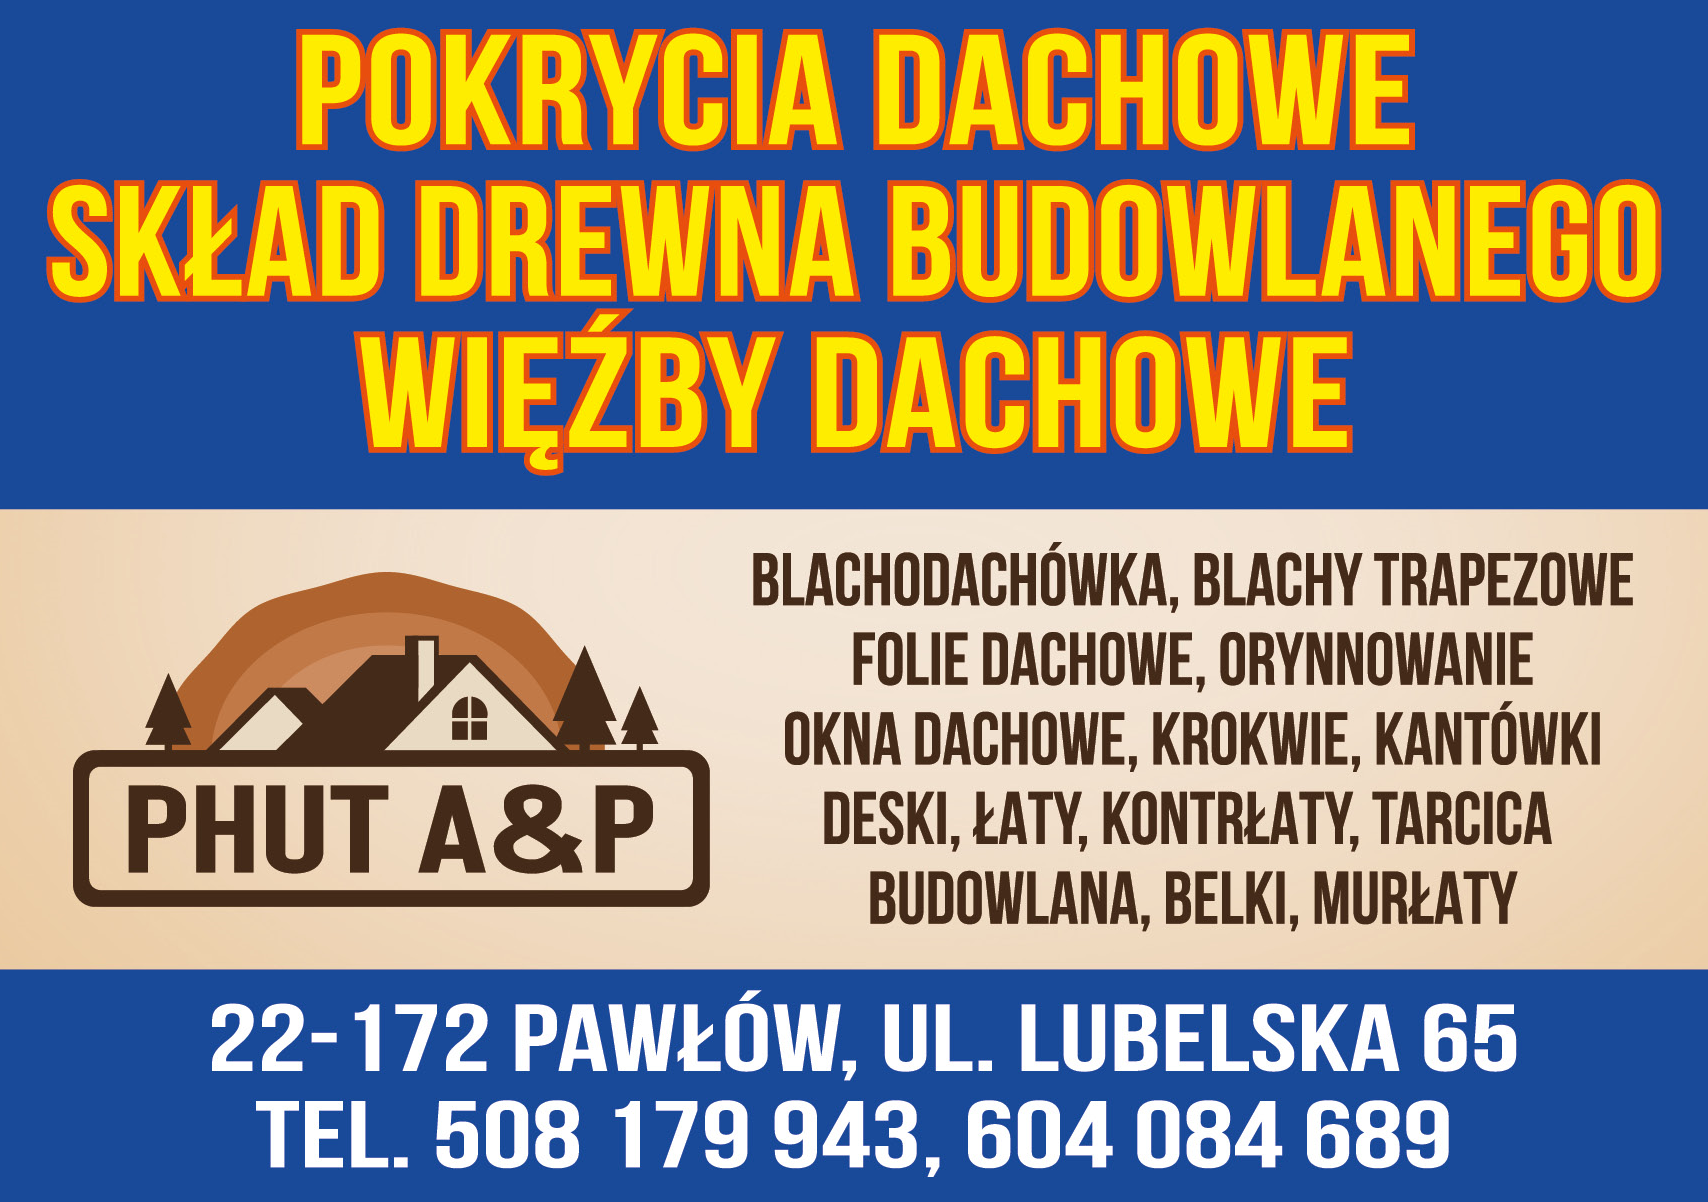 PHUT A&P Pawłów Pokrycia Dachowe / Skład Drewna Budowlanego / Więźby Dachowe